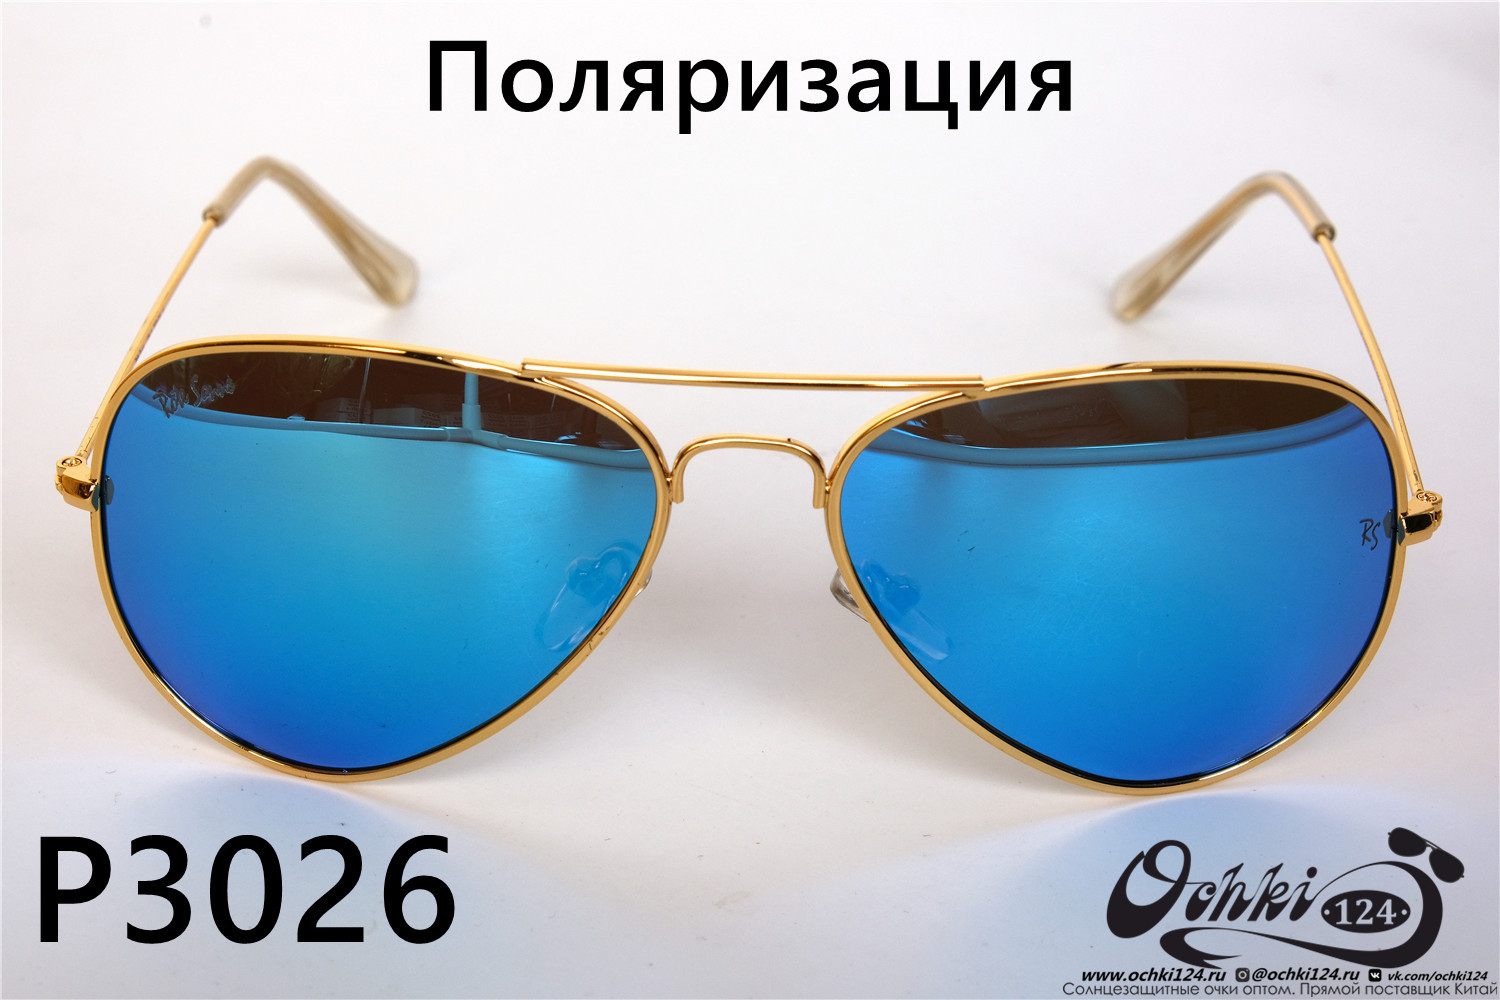  Солнцезащитные очки картинка 2022 Унисекс Поляризованные Авиаторы Rote Sonne P3026-8 